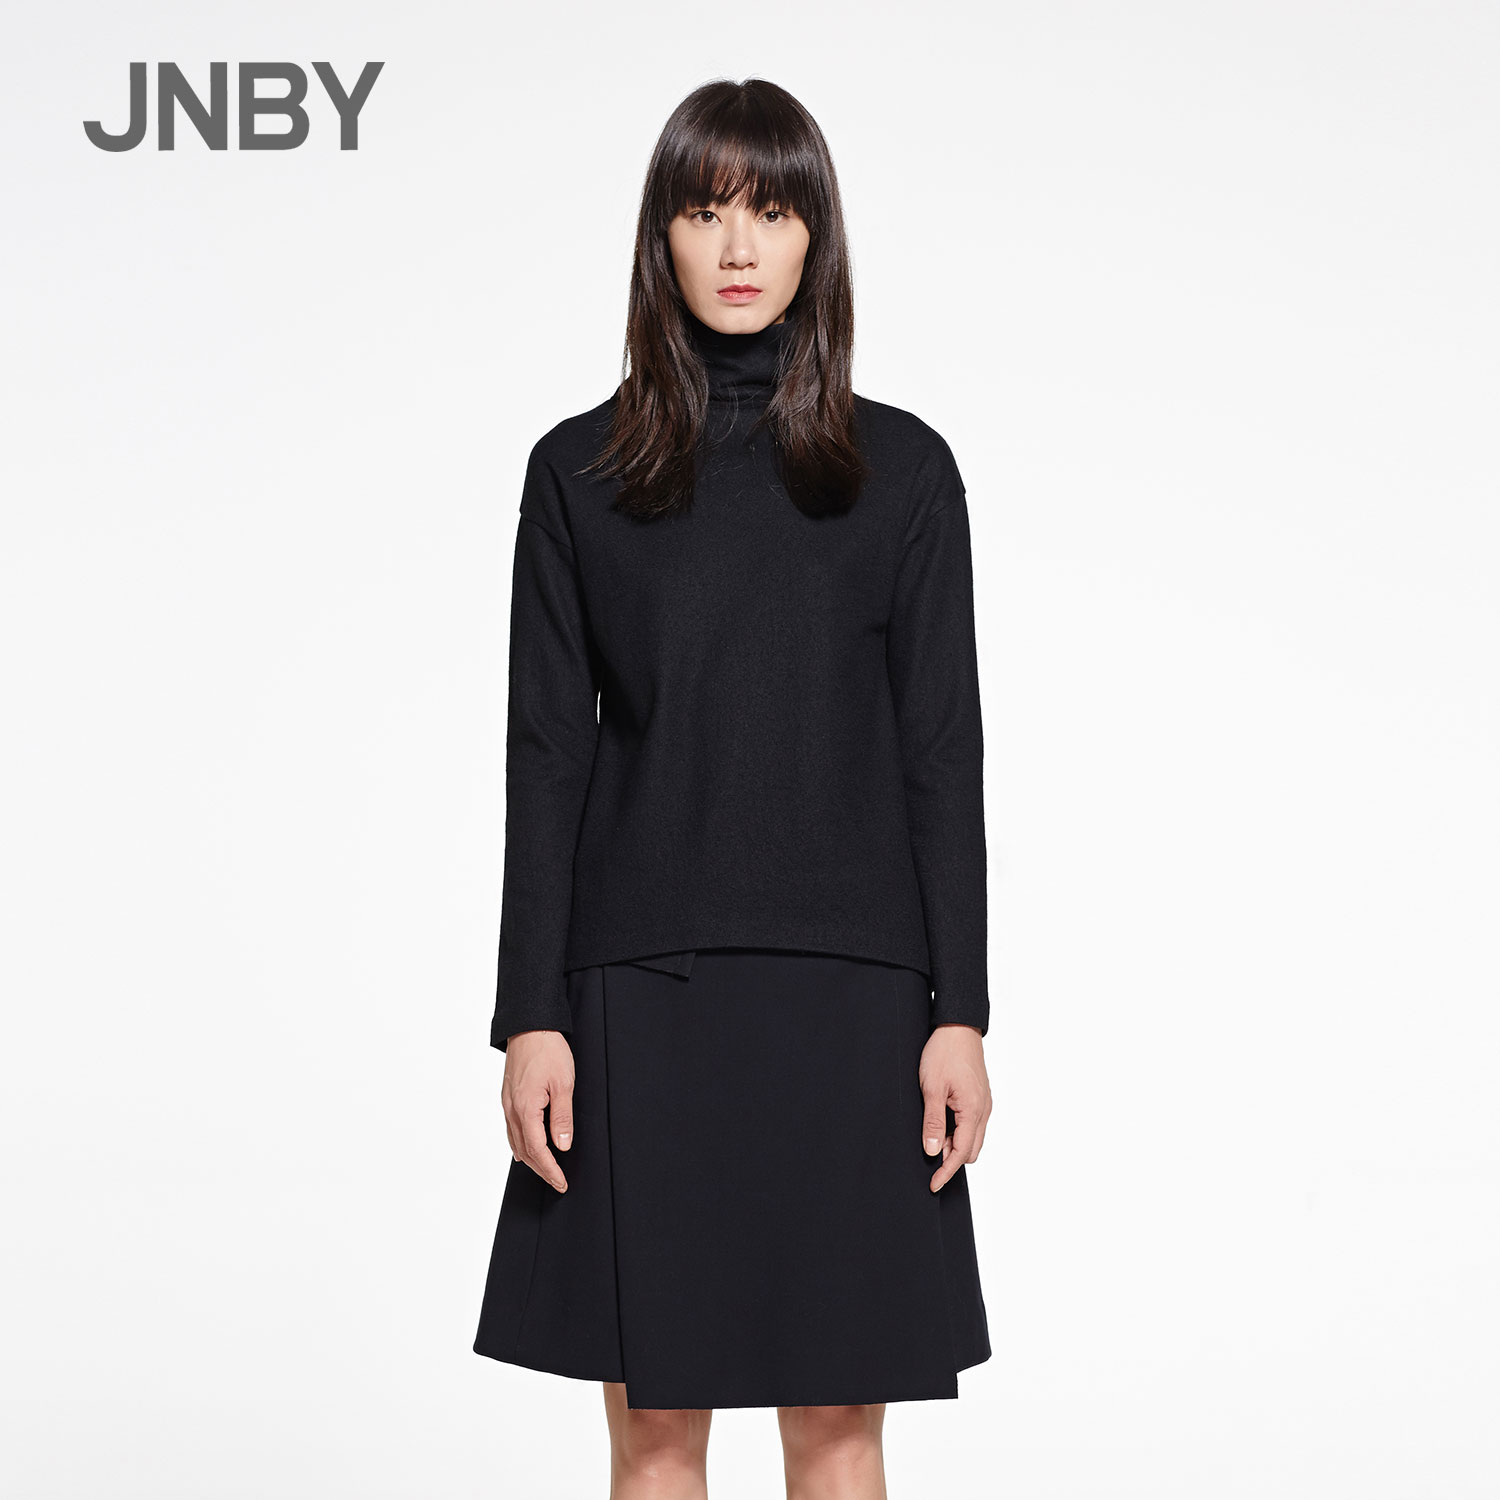 JNBY/江南布衣冬装新款时尚优雅修身女式外套5FA23088